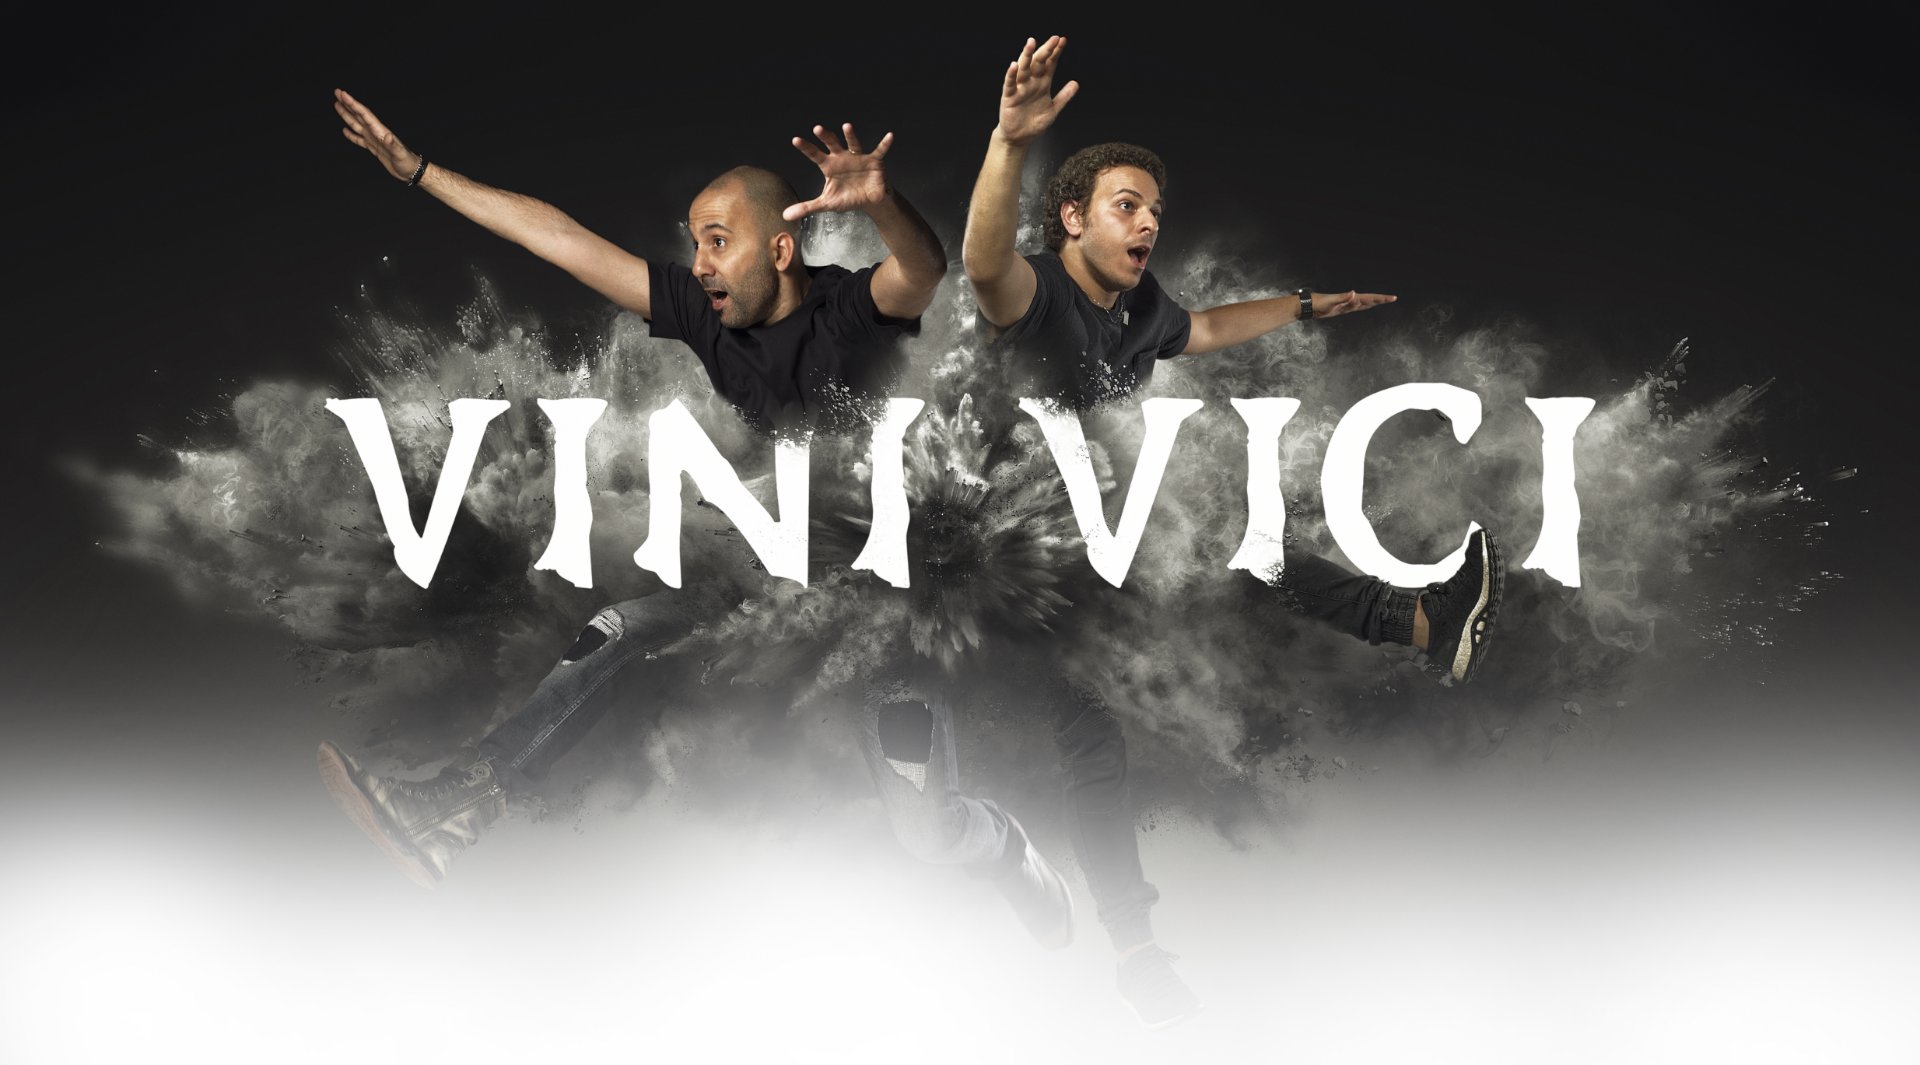 Vini Vici - Veni Vidi Vici, Releases